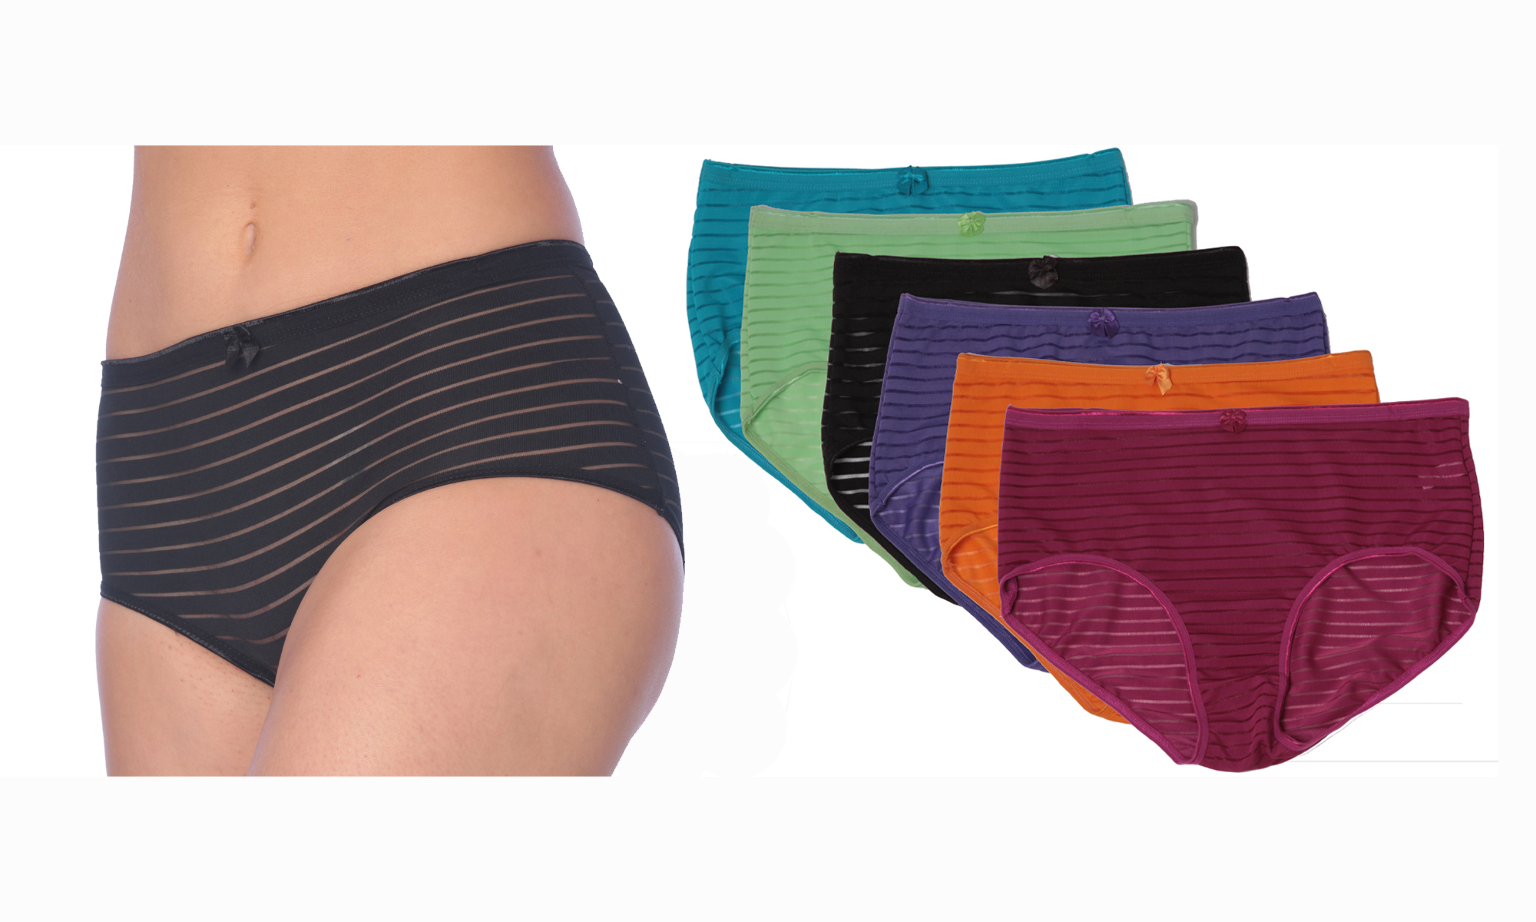 Bulk Women's Cotton/Spandex Panties - Briefs, 5 Colors, 5-7